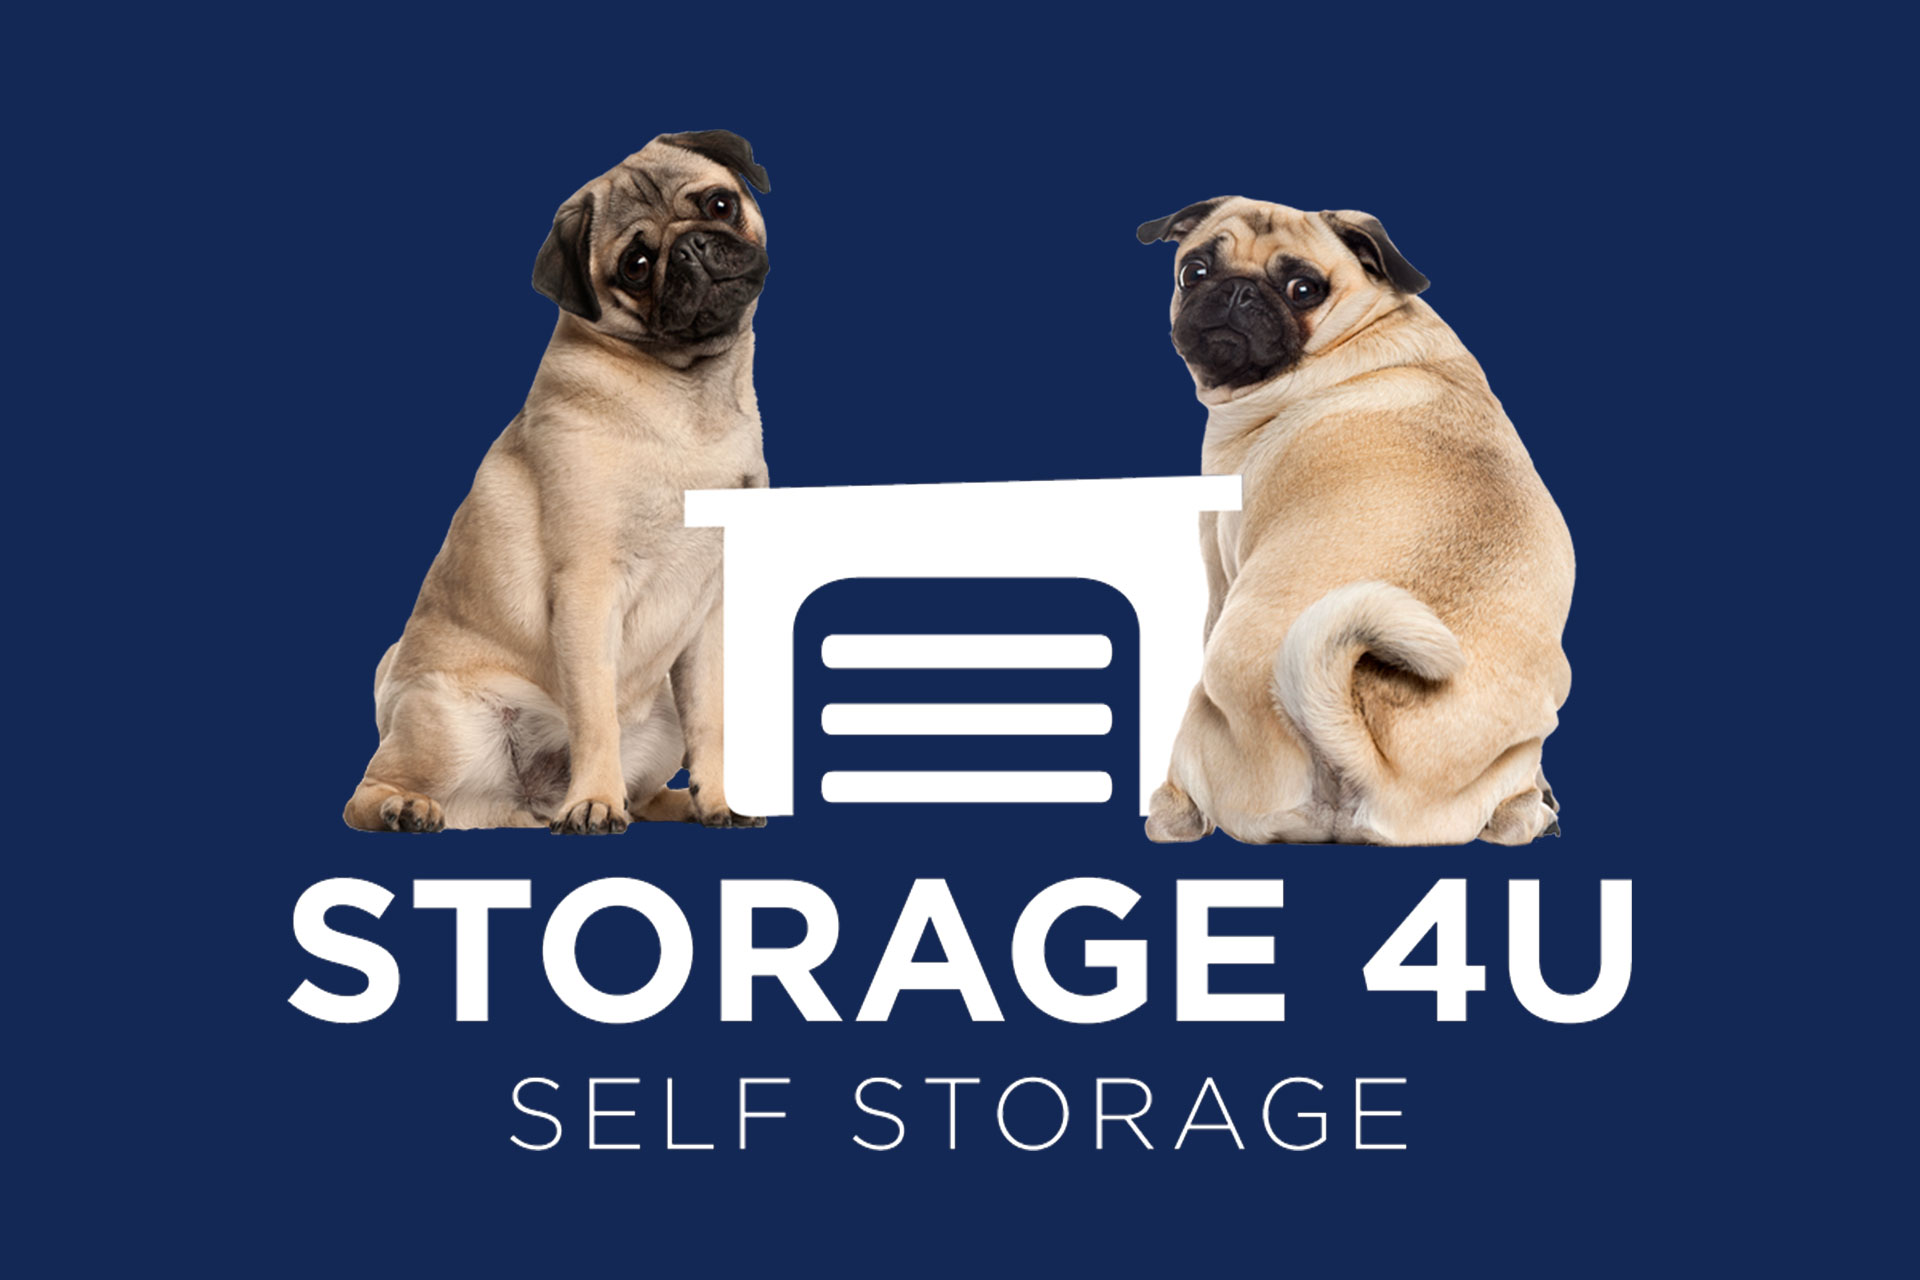 Storage 4U Self Storage logo with two friendly pugs